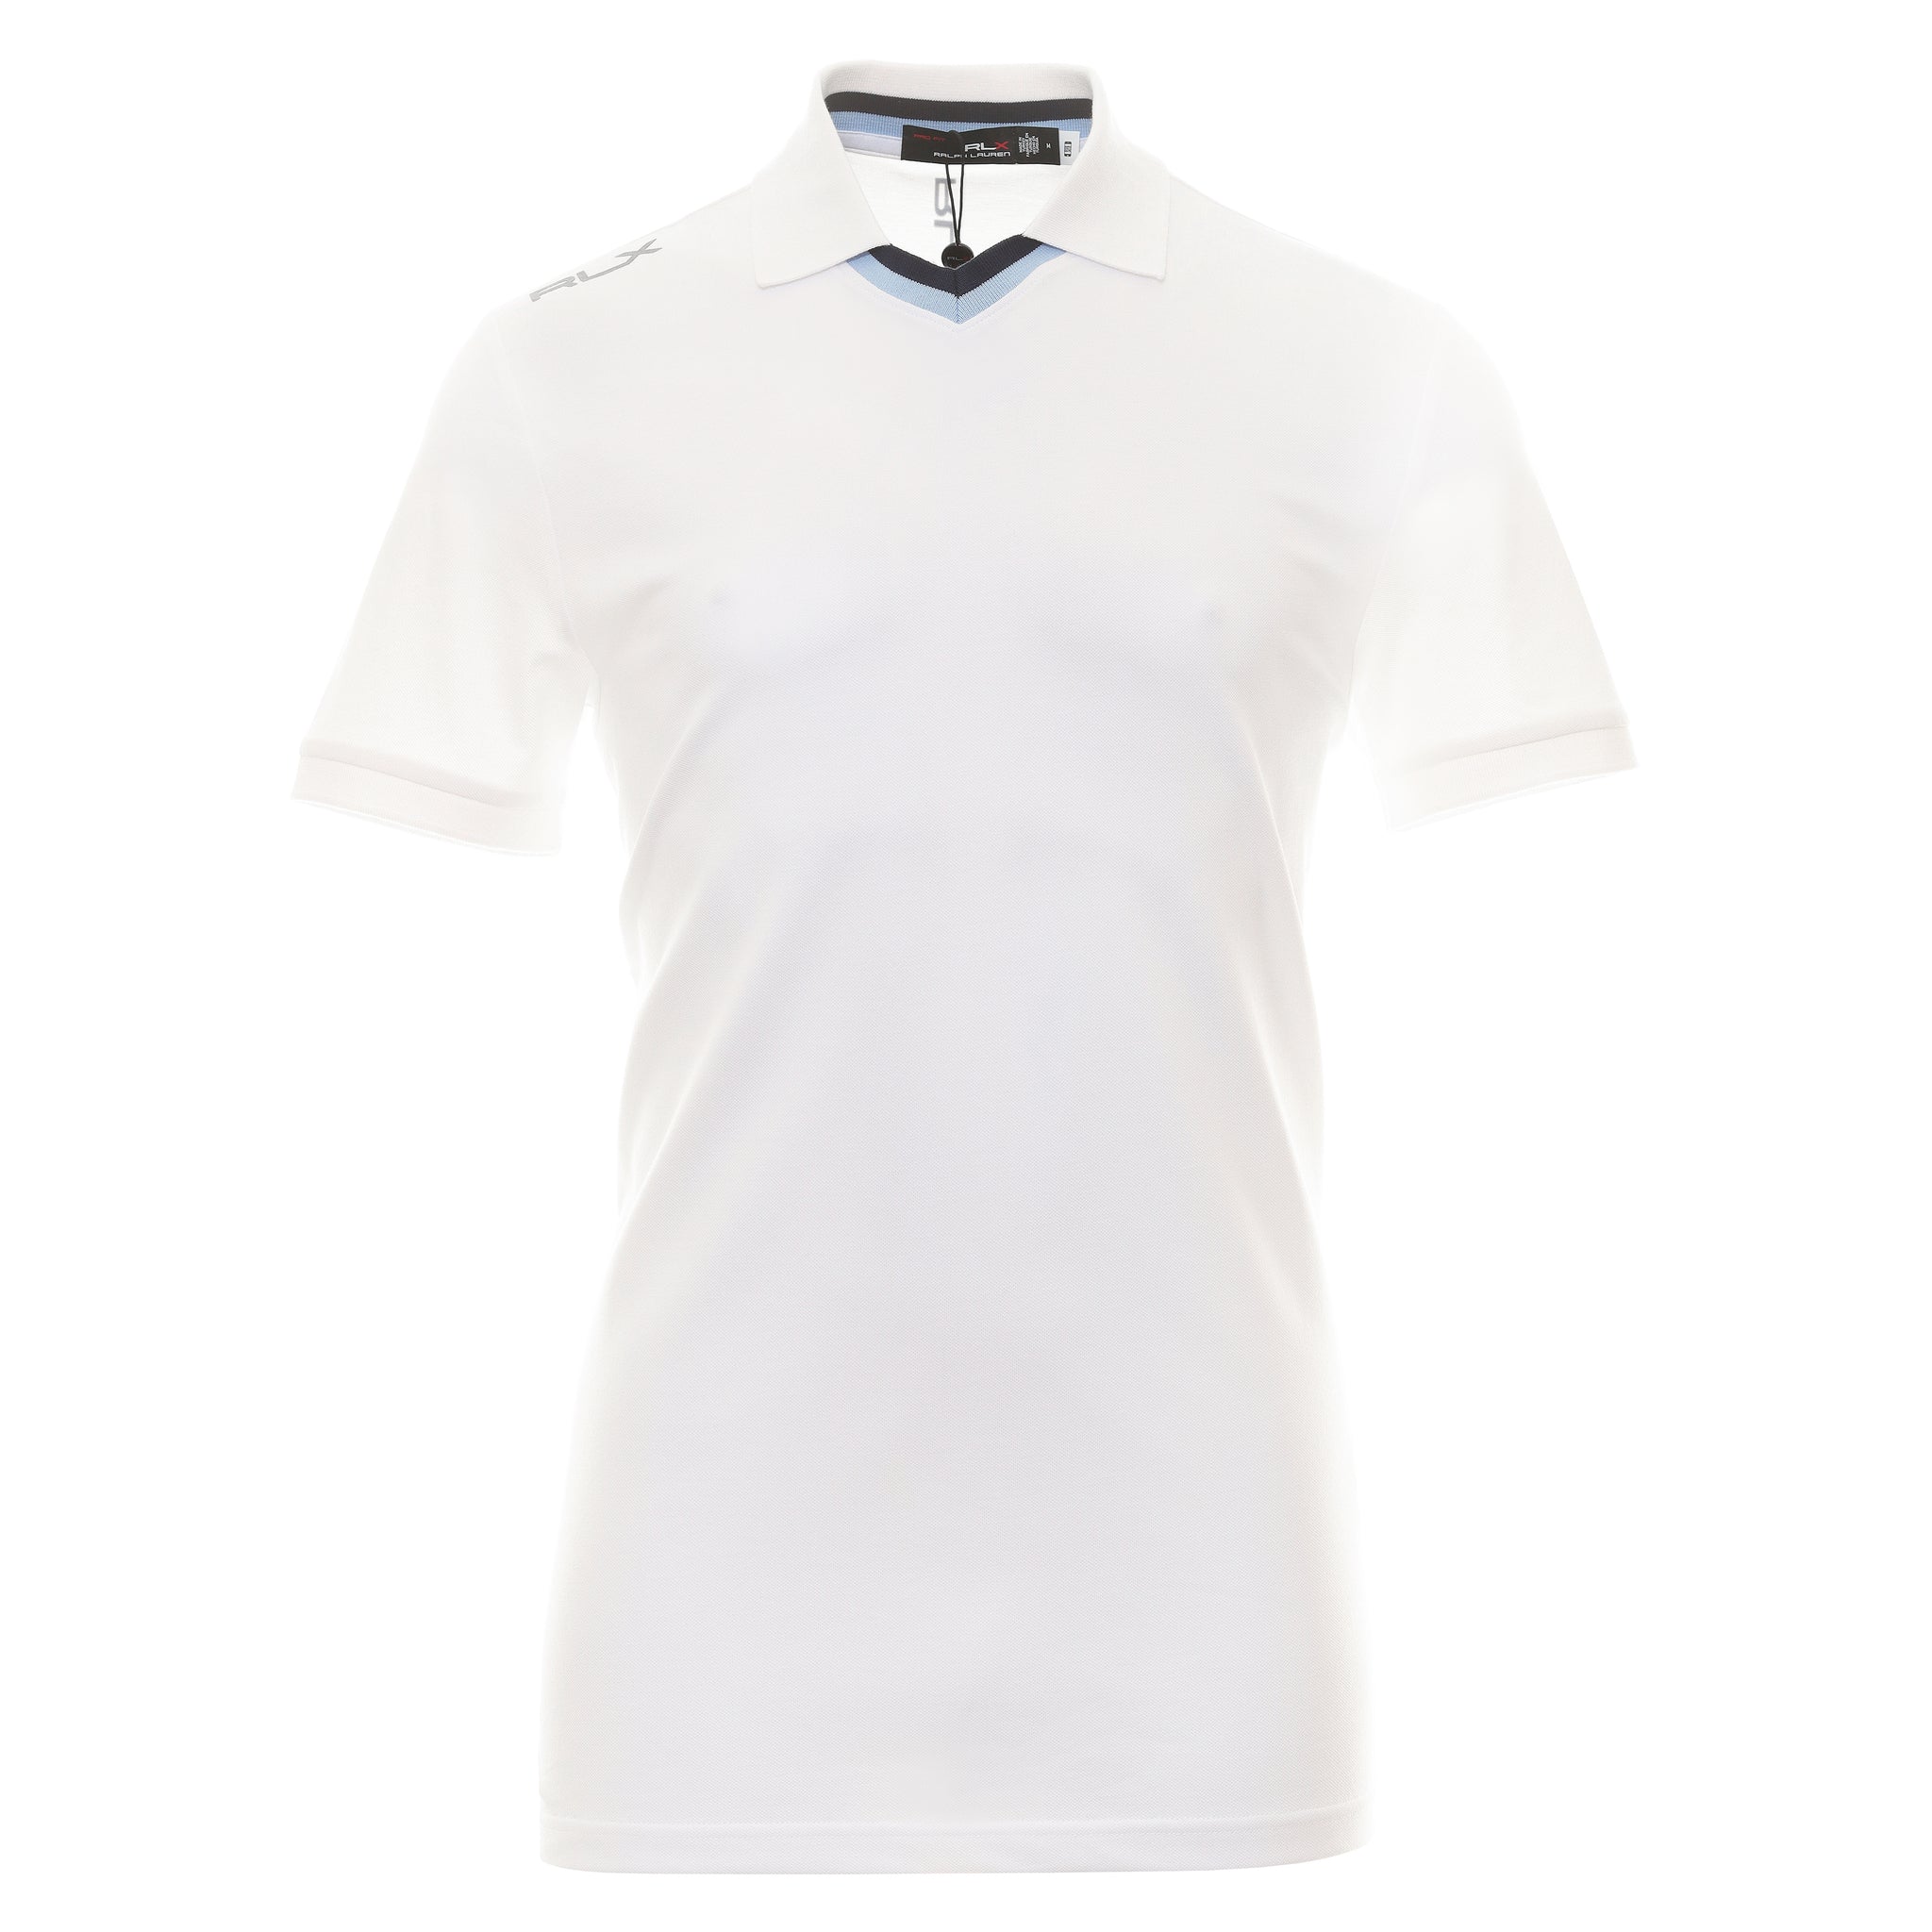 rlx-ralph-lauren-buttonless-pique-shirt-785915849-ceramic-white-001